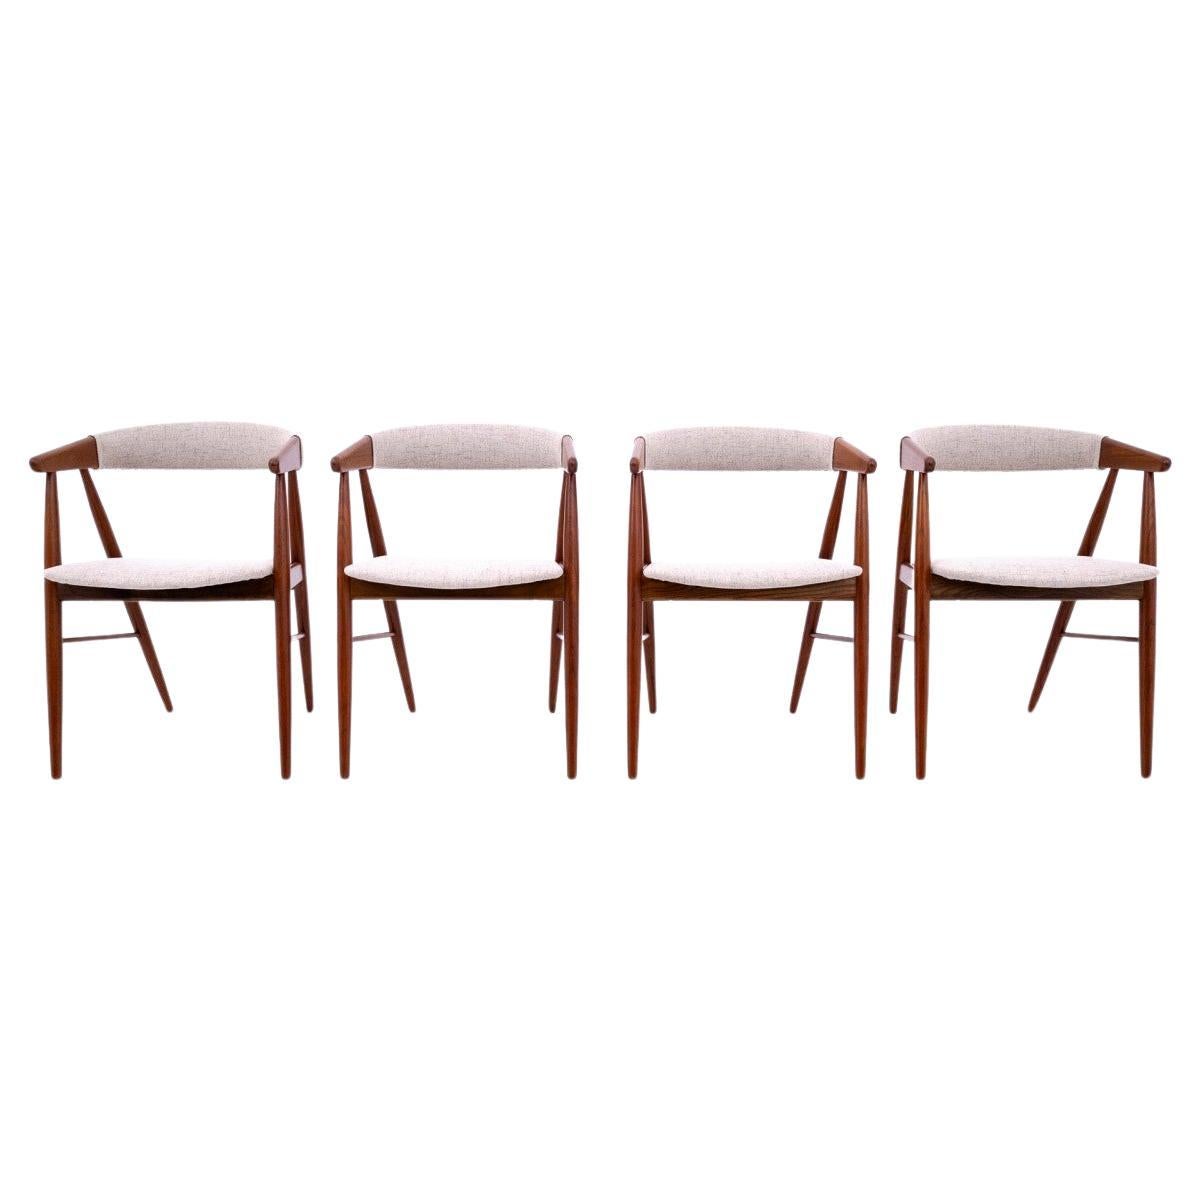 Chairs designed by Ejner Larsen & Aksel Bender Madsen, Denmark, 1960s. After ren